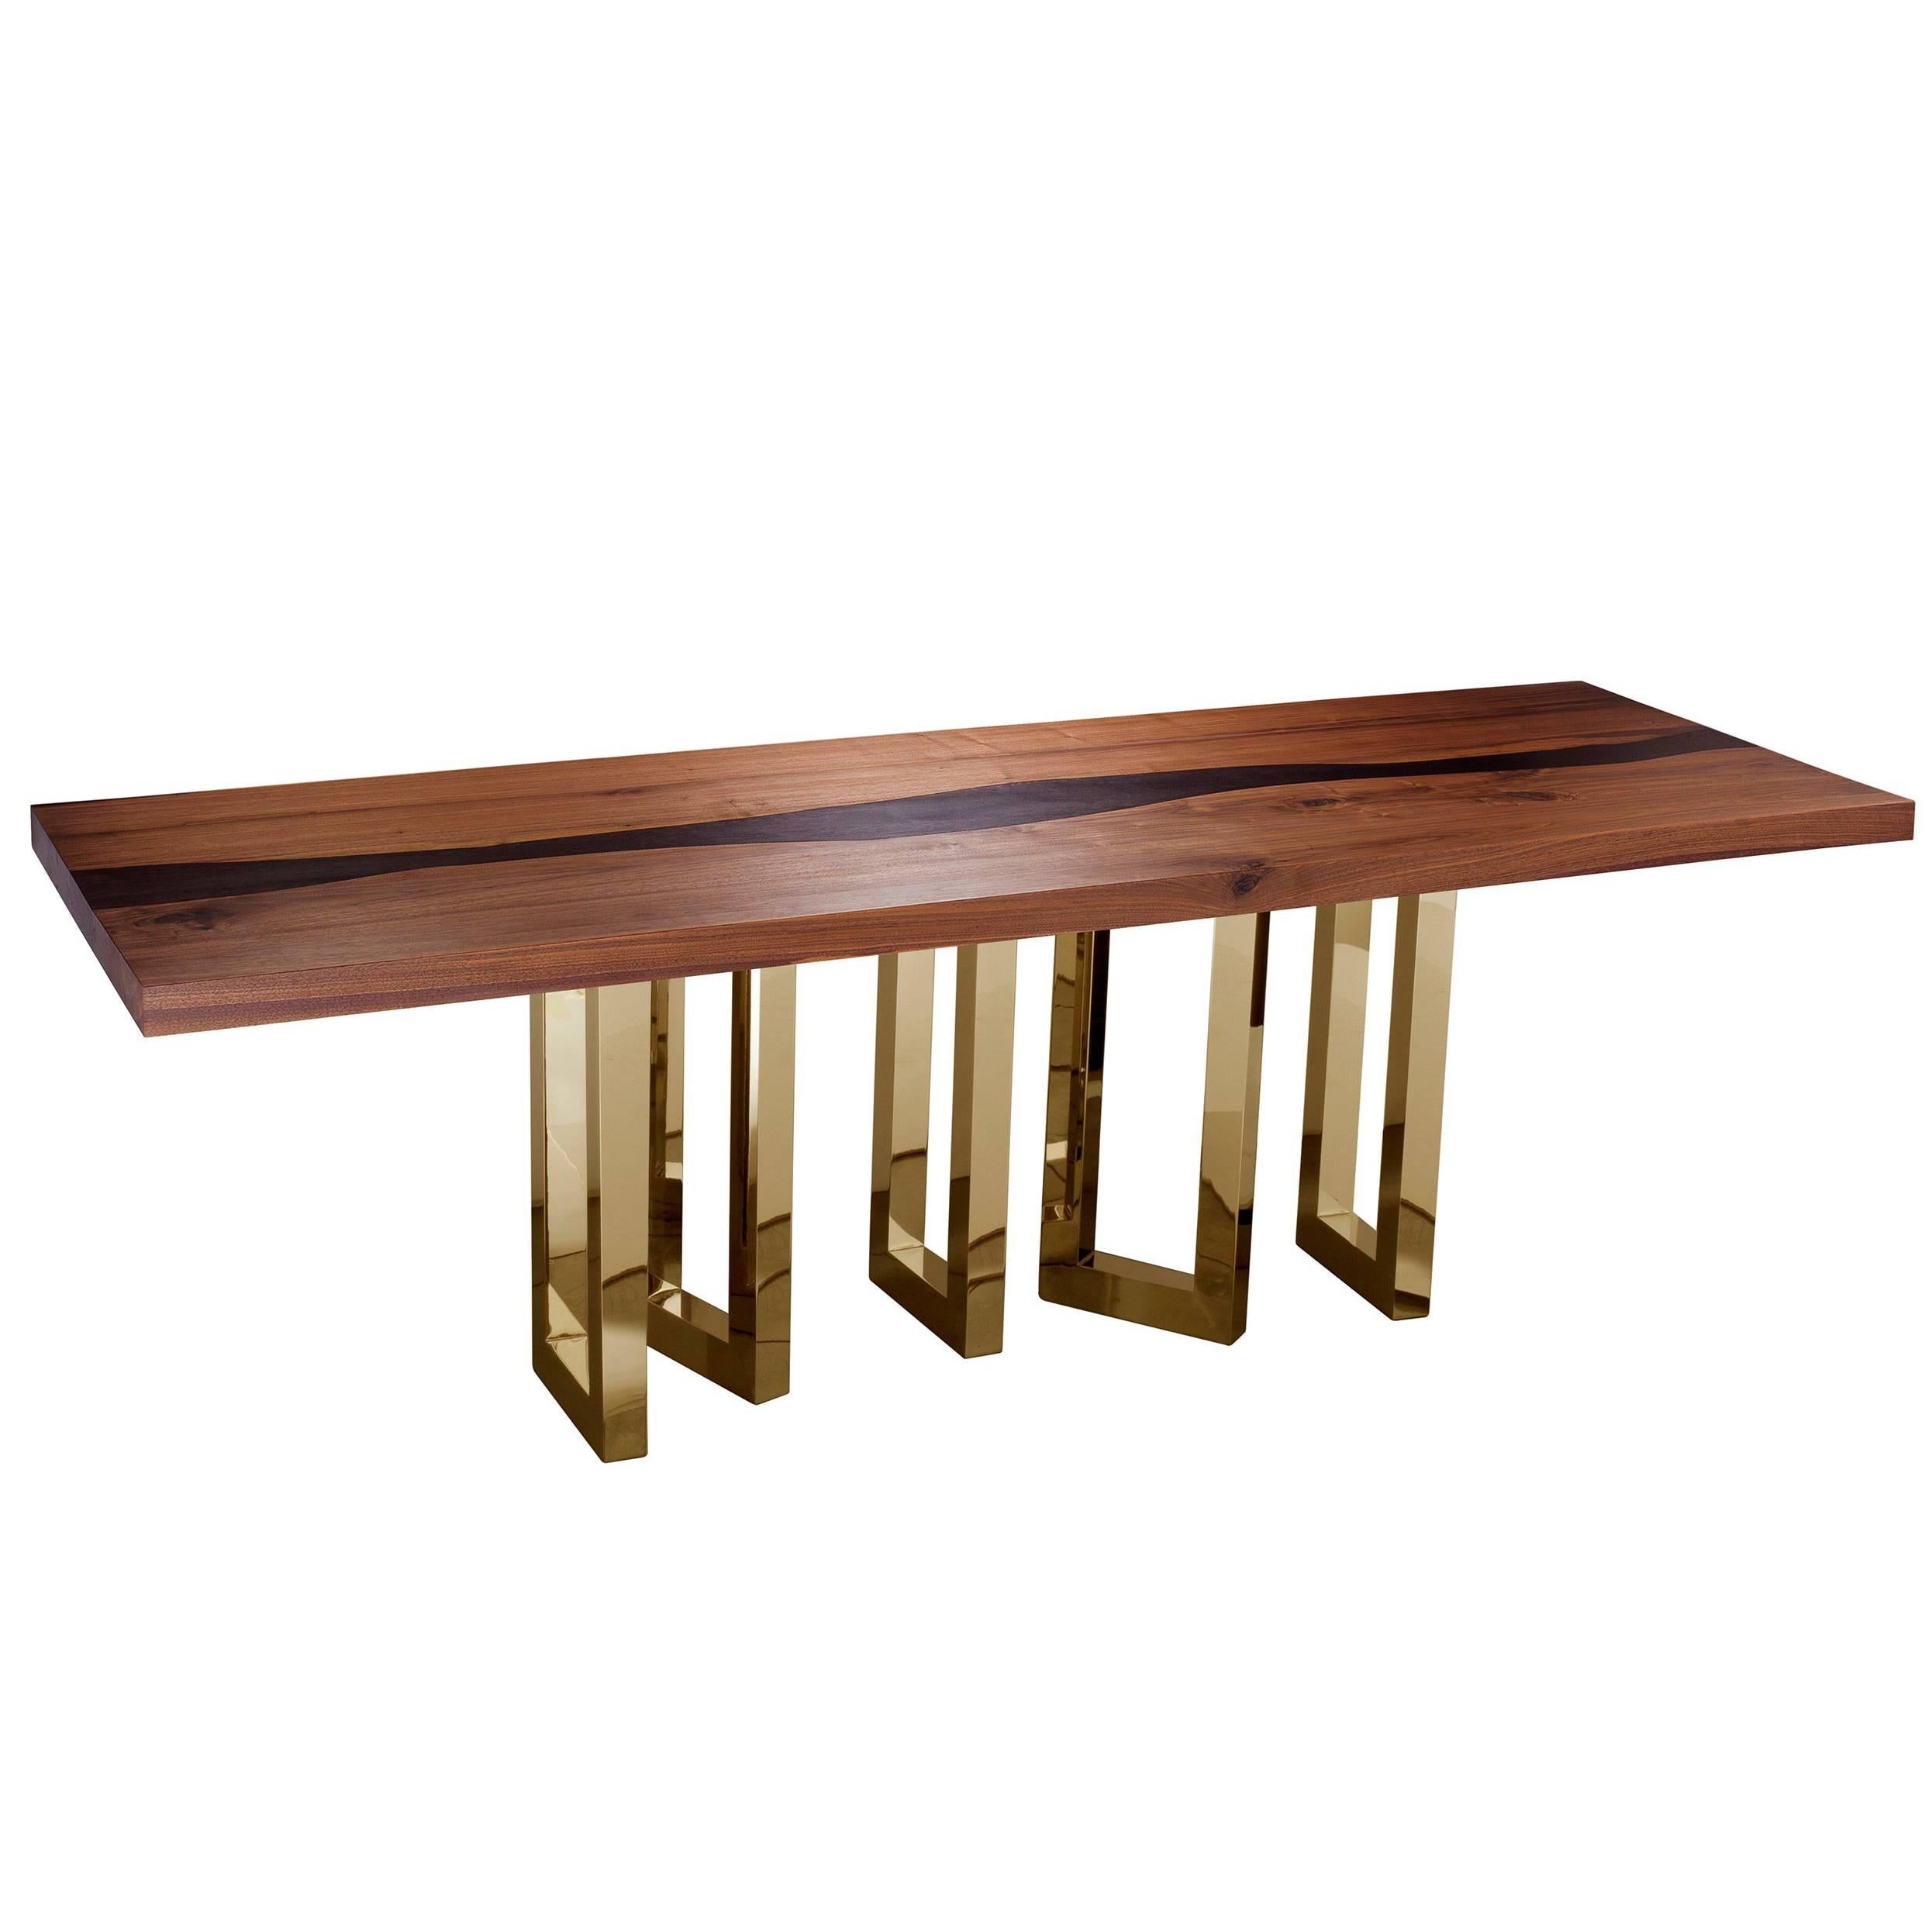 "Il Pezzo 6 Long Table" longueur 260cm/102.4 - noyer et wengé massif - base dorée